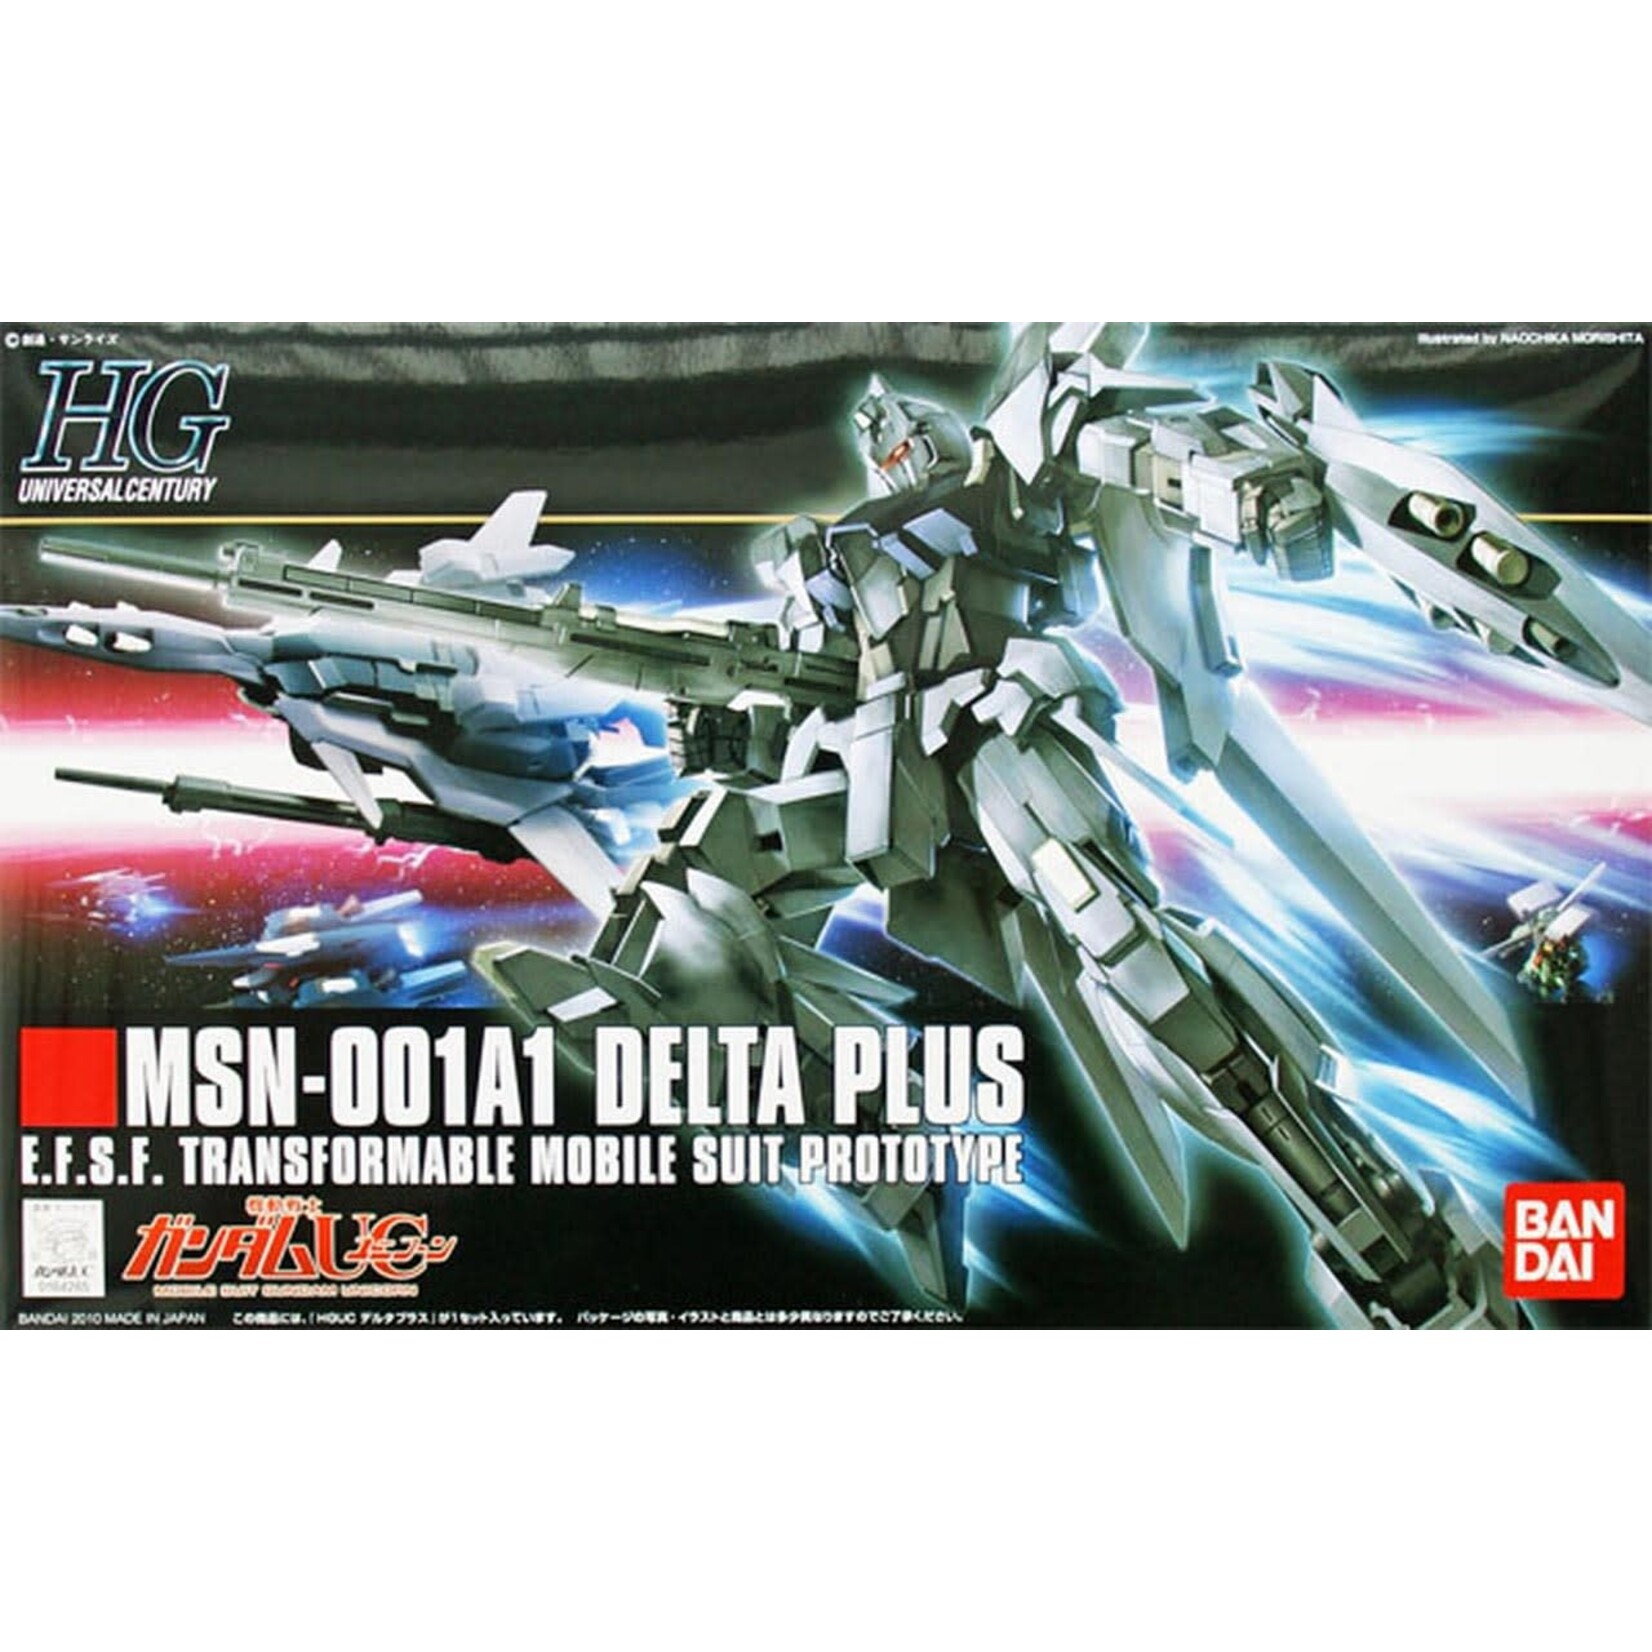 Bandai Bandai 2101613 HG #115 MSN-001A1 Delta Plus